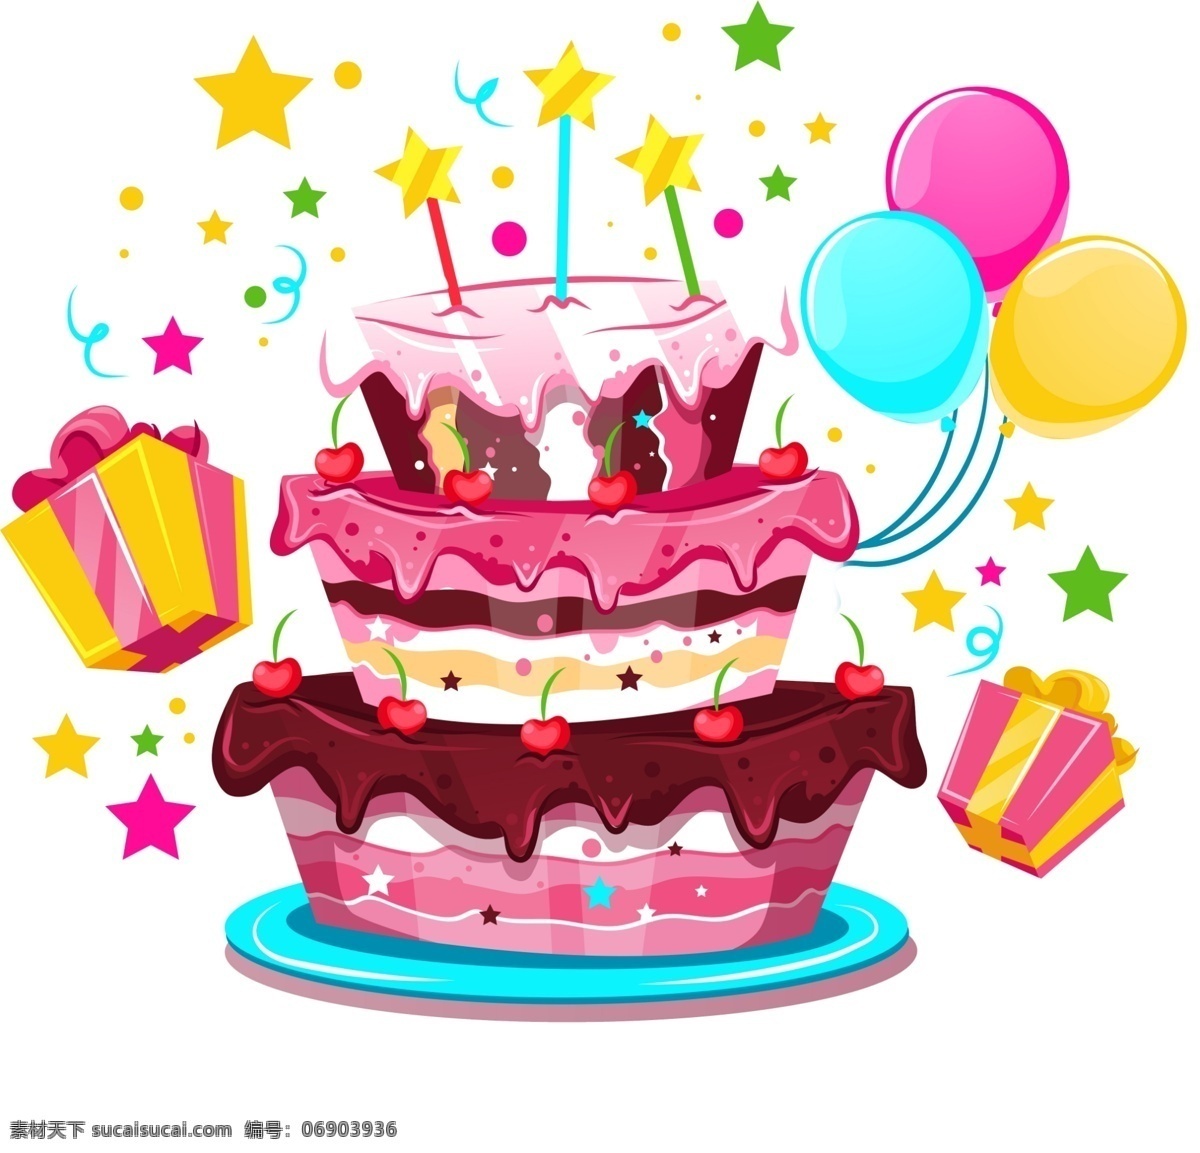 生日蛋糕 生日会 蛋糕 生日会素材 气球 礼物 生日快乐 生日 生日素材 生日海报